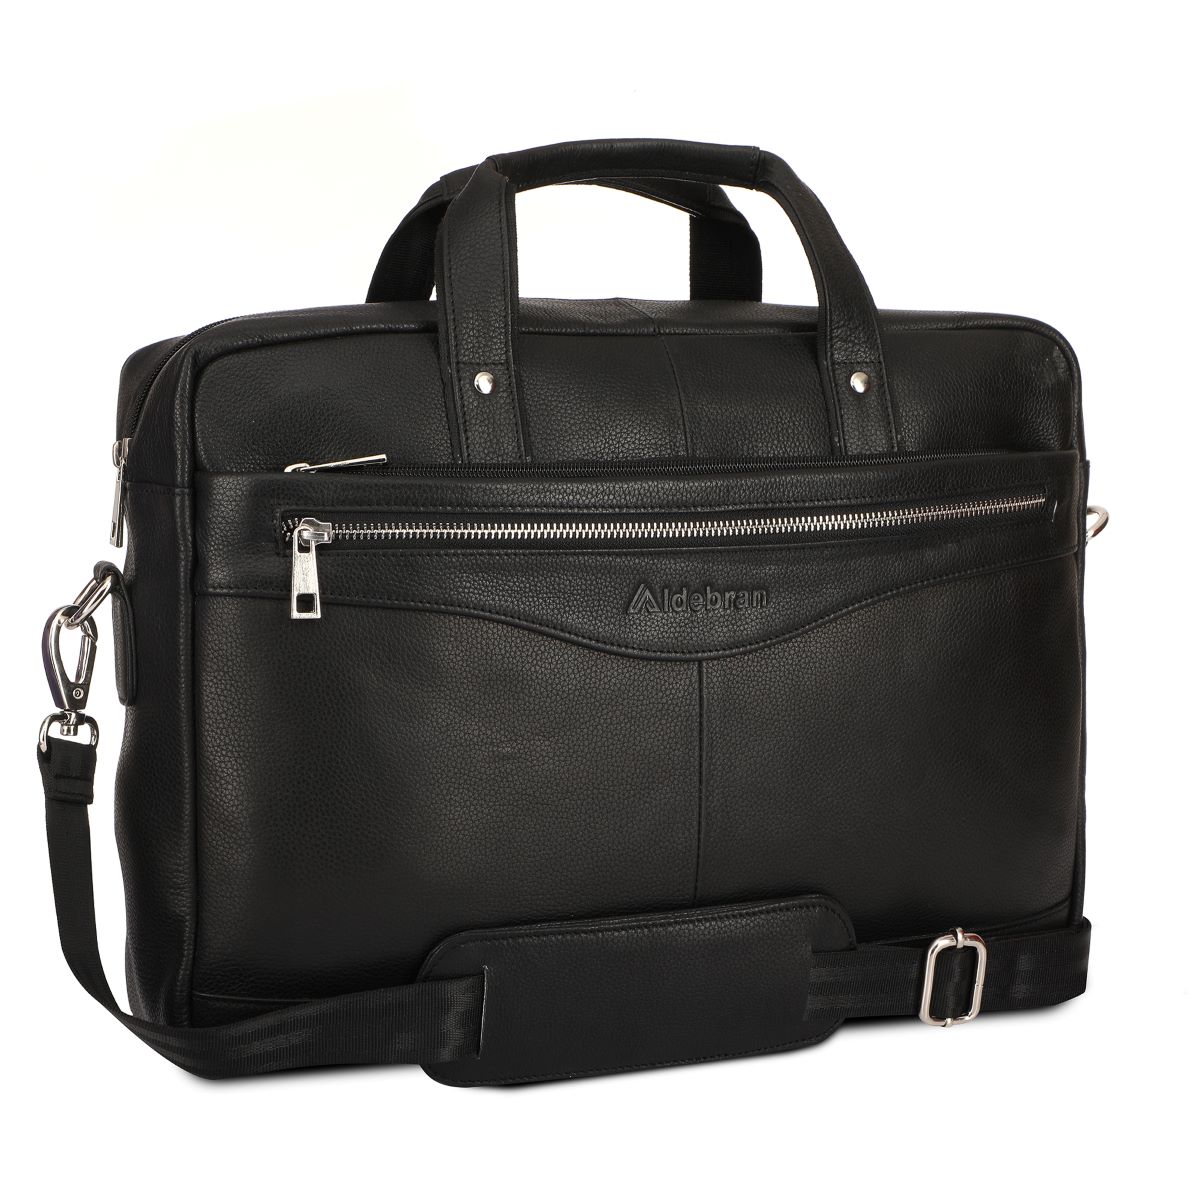 “Aldebran Black Leather Laptop Bag with Detachable Shoulder Strap”